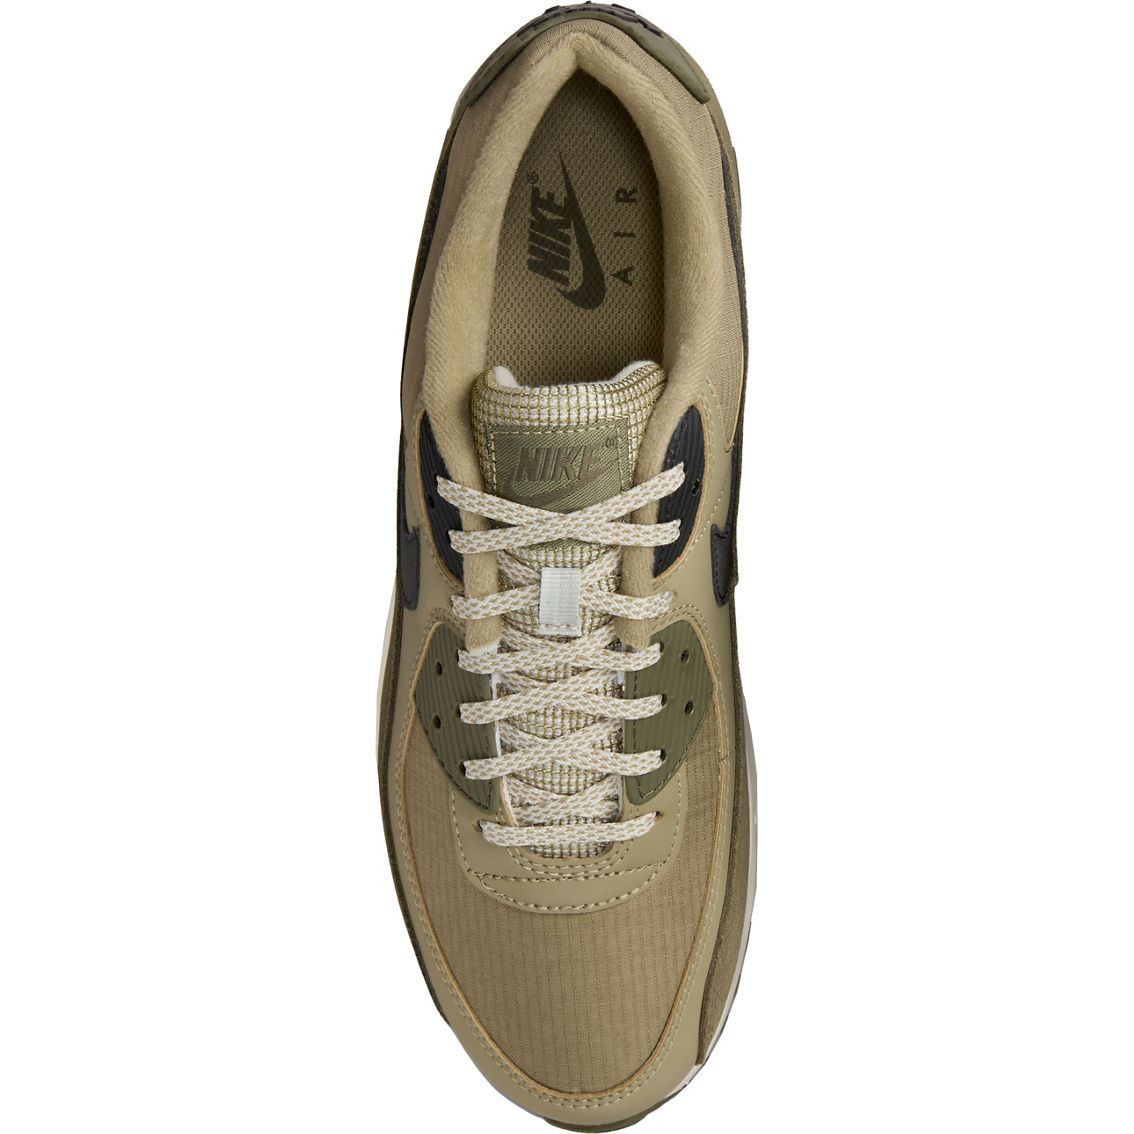 Nike Air Max 90 Sneakers - Image 4 of 8